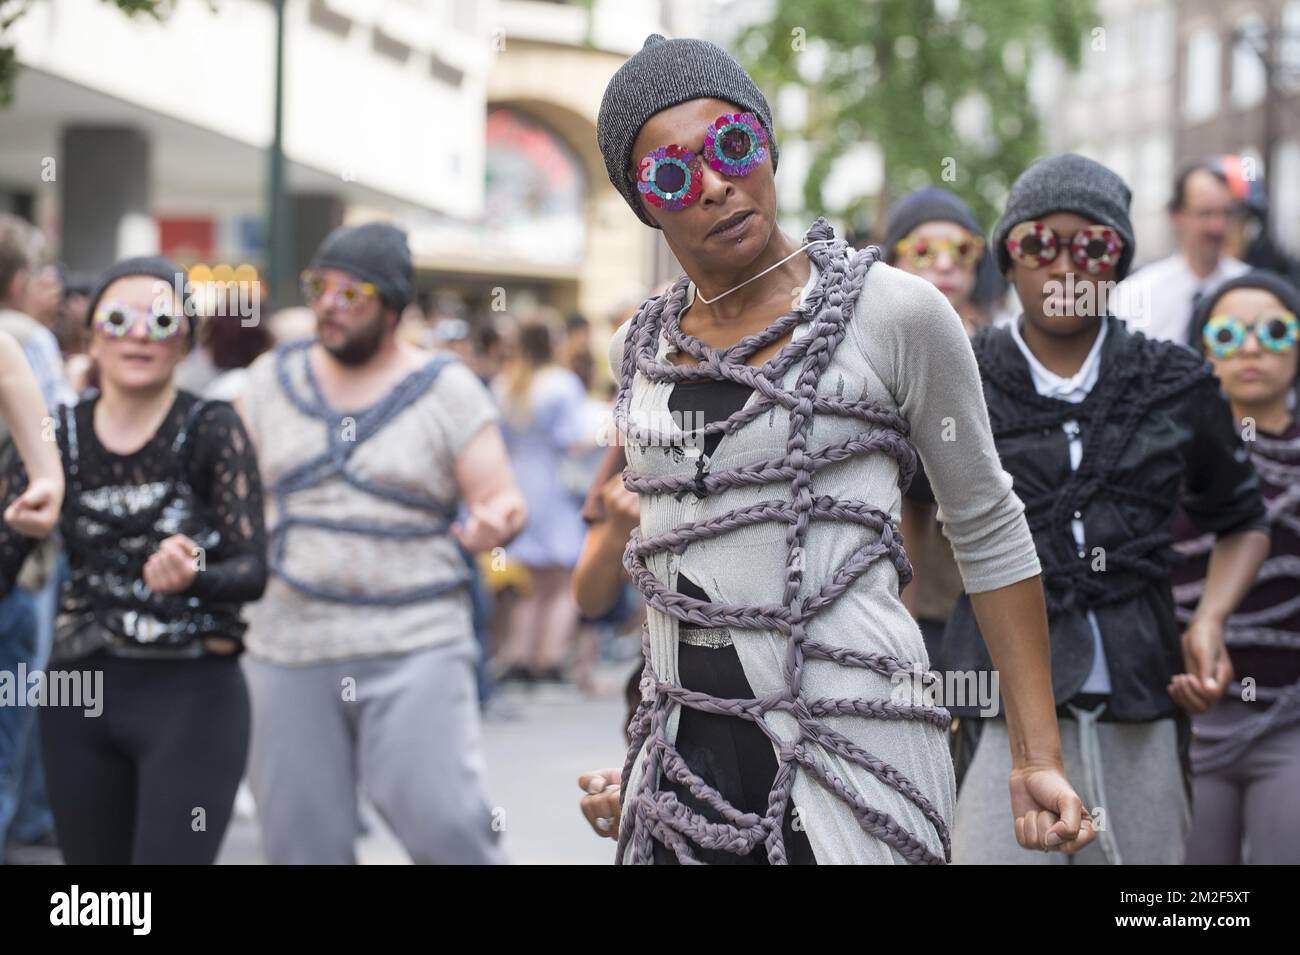 10eme edizione de la Zinneke sfilata dans les rues de Bruxelles centro. 21 Zinnodes defilent sur le theme illegale 12/05/2018 Foto Stock